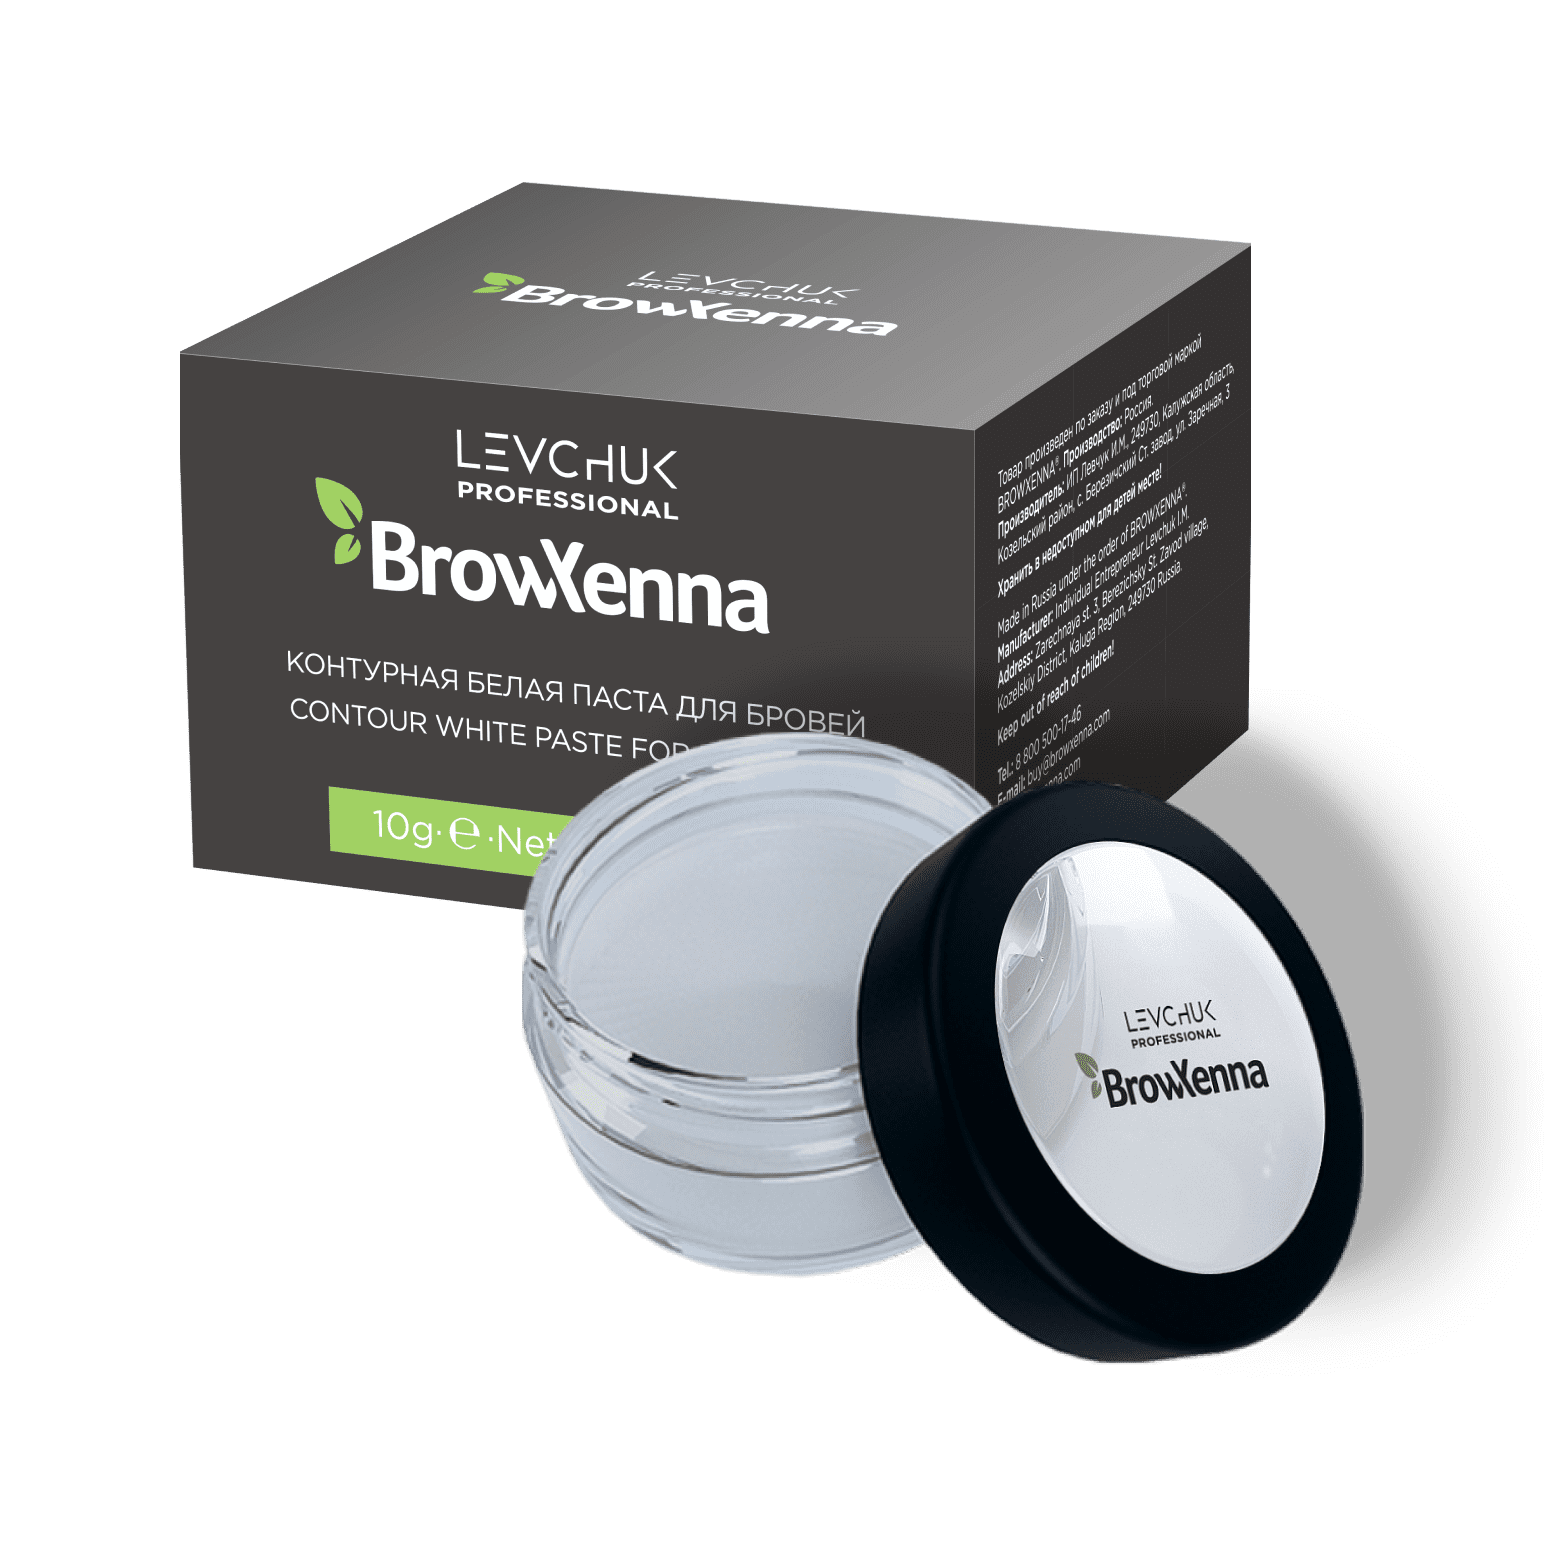 BrowXenna® Contour white paste for eyebrows